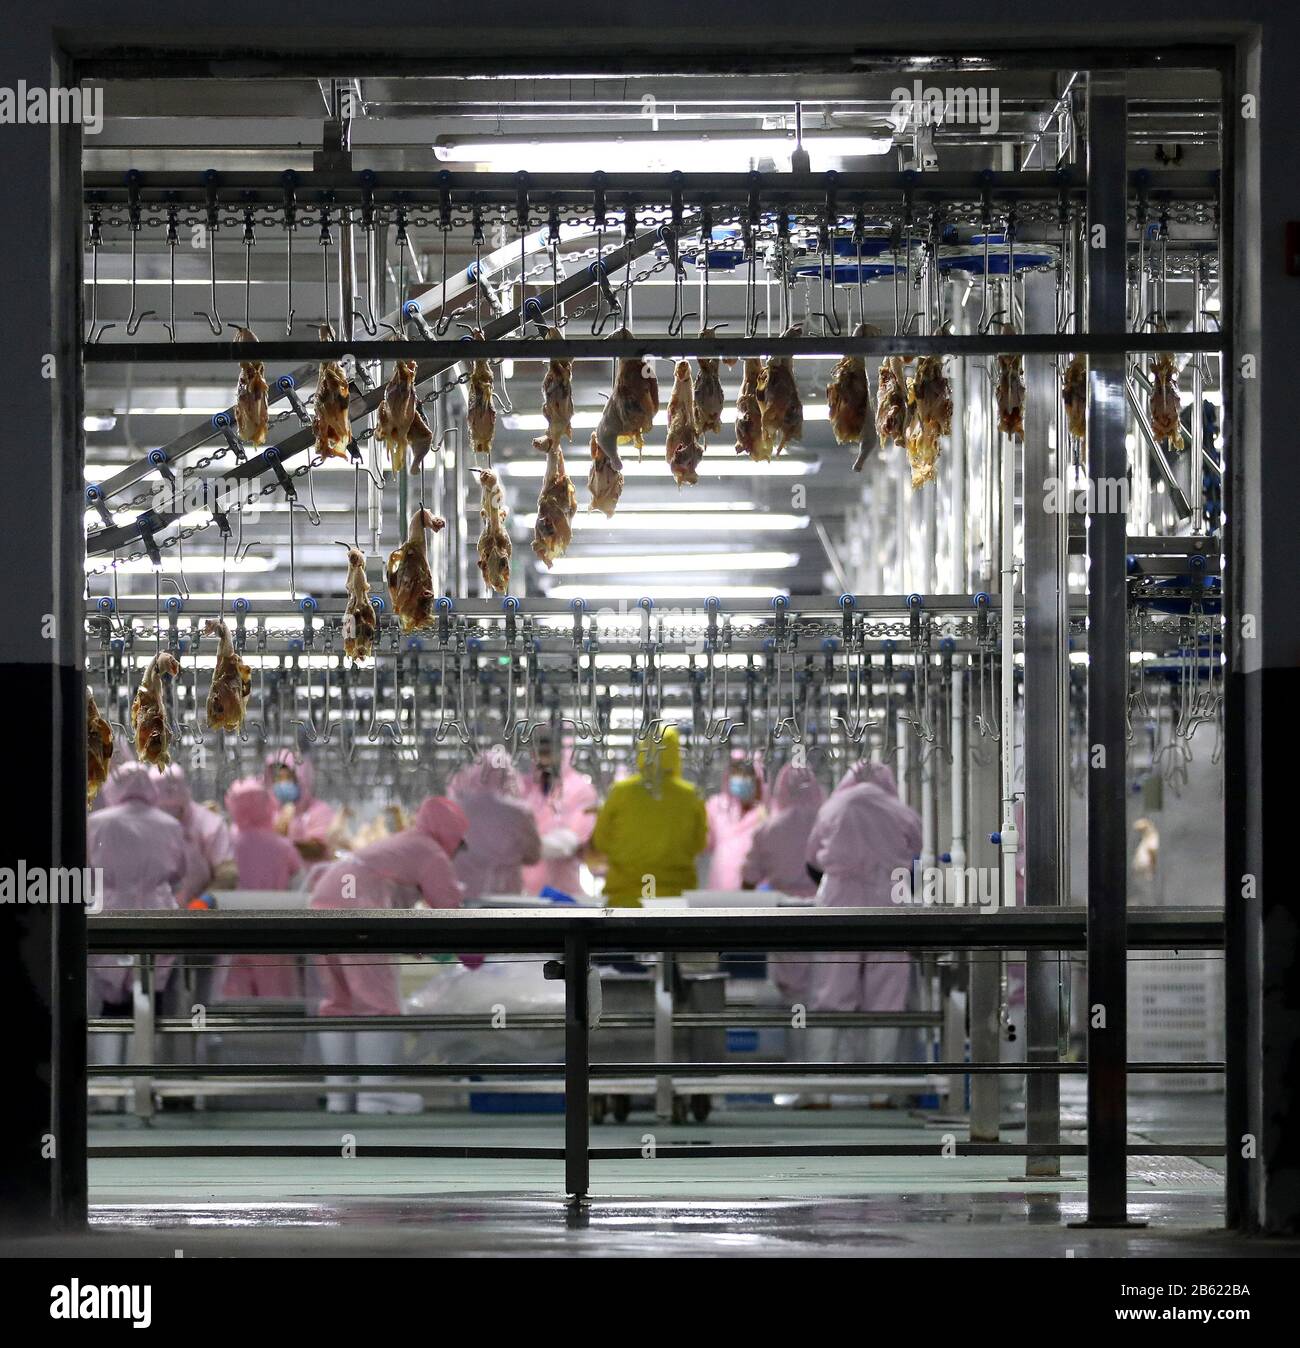 Anshan, Provincia De Liaoning De China. 9 de marzo de 2020. Los trabajadores están ocupados en líneas de producción en una compañía de carne de aves de corral en la ciudad de Anshan, en la provincia Liaoning, noreste de China, el 9 de marzo de 2020. Los bancos de Anshan han ofrecido apoyo financiero a las empresas agrícolas locales para ayudarles a reanudar la producción en medio de la lucha contra el nuevo coronavirus. Crédito: Yao Jianfeng/Xinhua/Alamy Live News Foto de stock